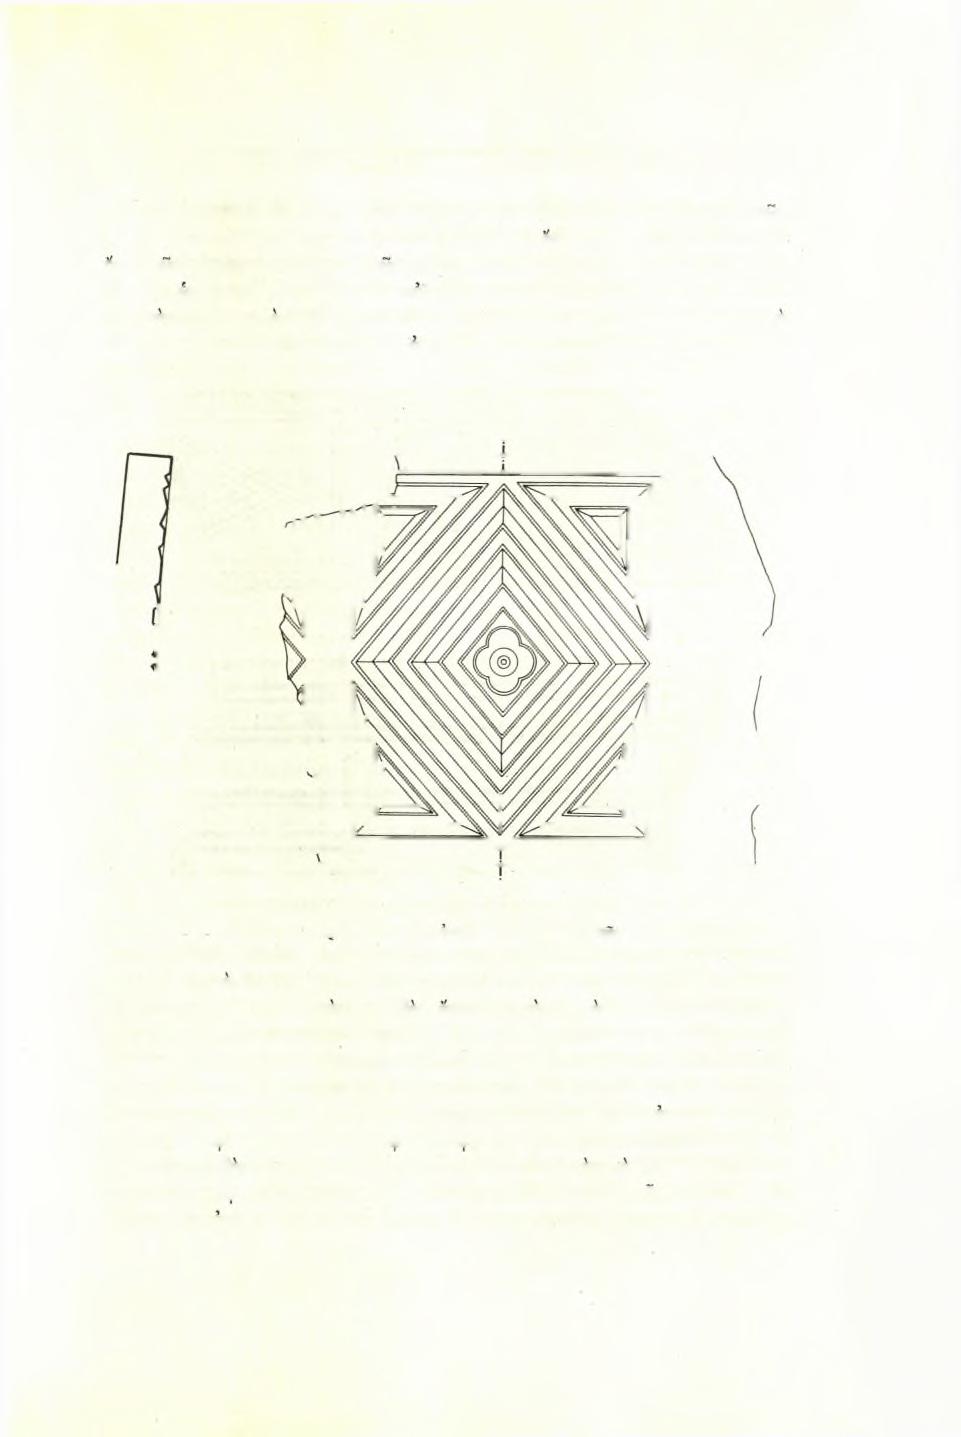 Στυλιανού Πελεκανίδη : Άνασκαφή 'Οκταγώνου Φιλίππων 71 τετράγωνοι βάσεις εύρέθησαν έπίσης κατά χώραν έναντι καί κατά τούς άξονας των παραστάδων τής κεντρικής πύλης.